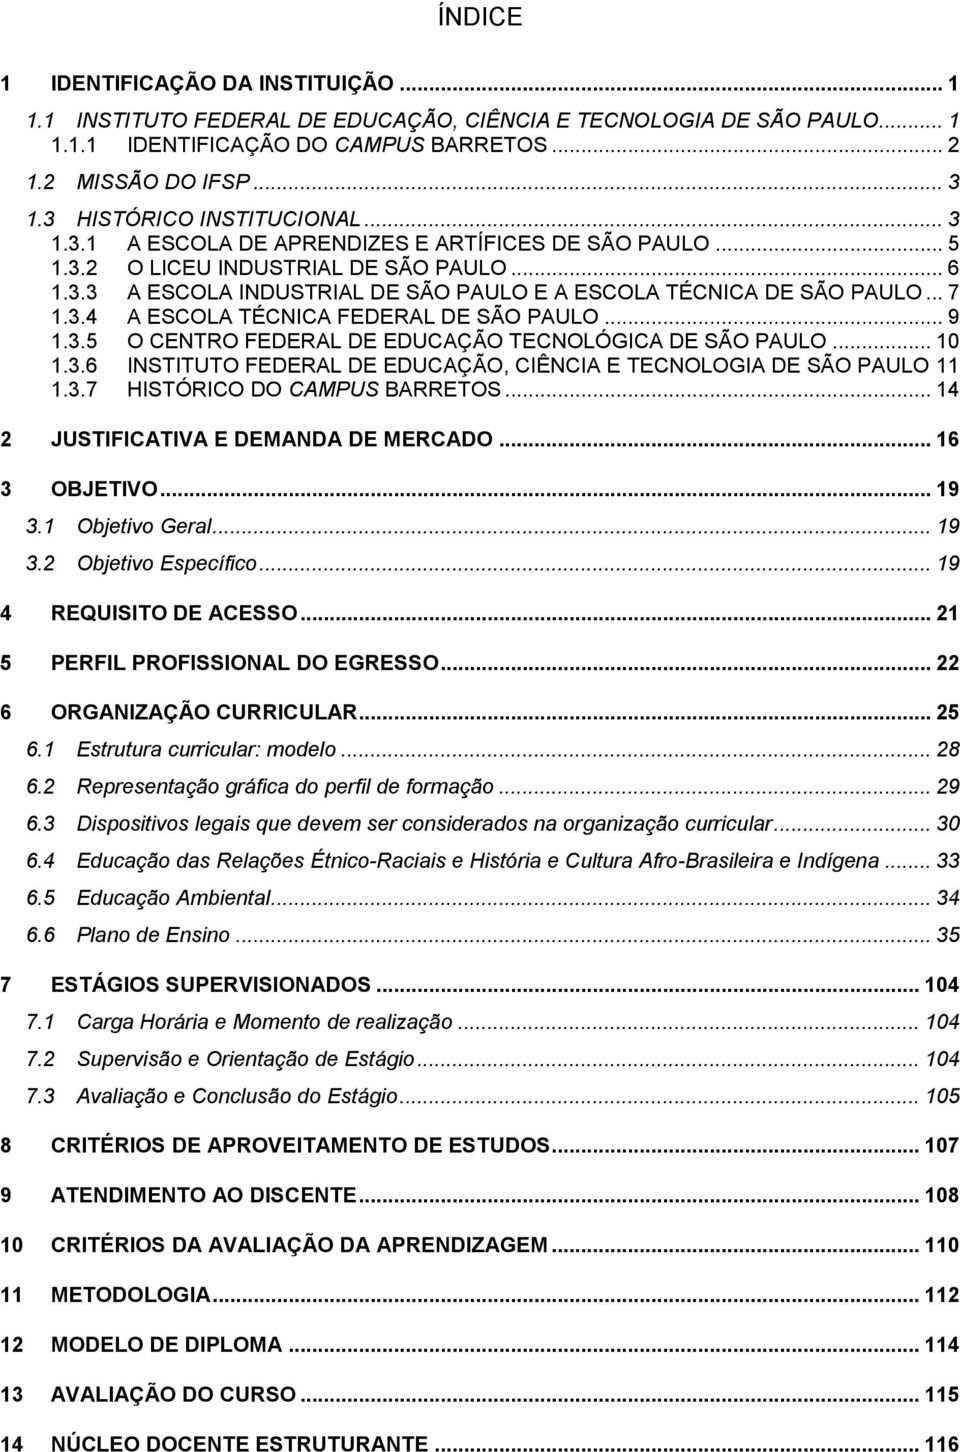 .. 7 1.3.4 A ESCOLA TÉCNICA FEDERAL DE SÃO PAULO... 9 1.3.5 O CENTRO FEDERAL DE EDUCAÇÃO TECNOLÓGICA DE SÃO PAULO... 10 1.3.6 INSTITUTO FEDERAL DE EDUCAÇÃO, CIÊNCIA E TECNOLOGIA DE SÃO PAULO 11 1.3.7 HISTÓRICO DO CAMPUS BARRETOS.